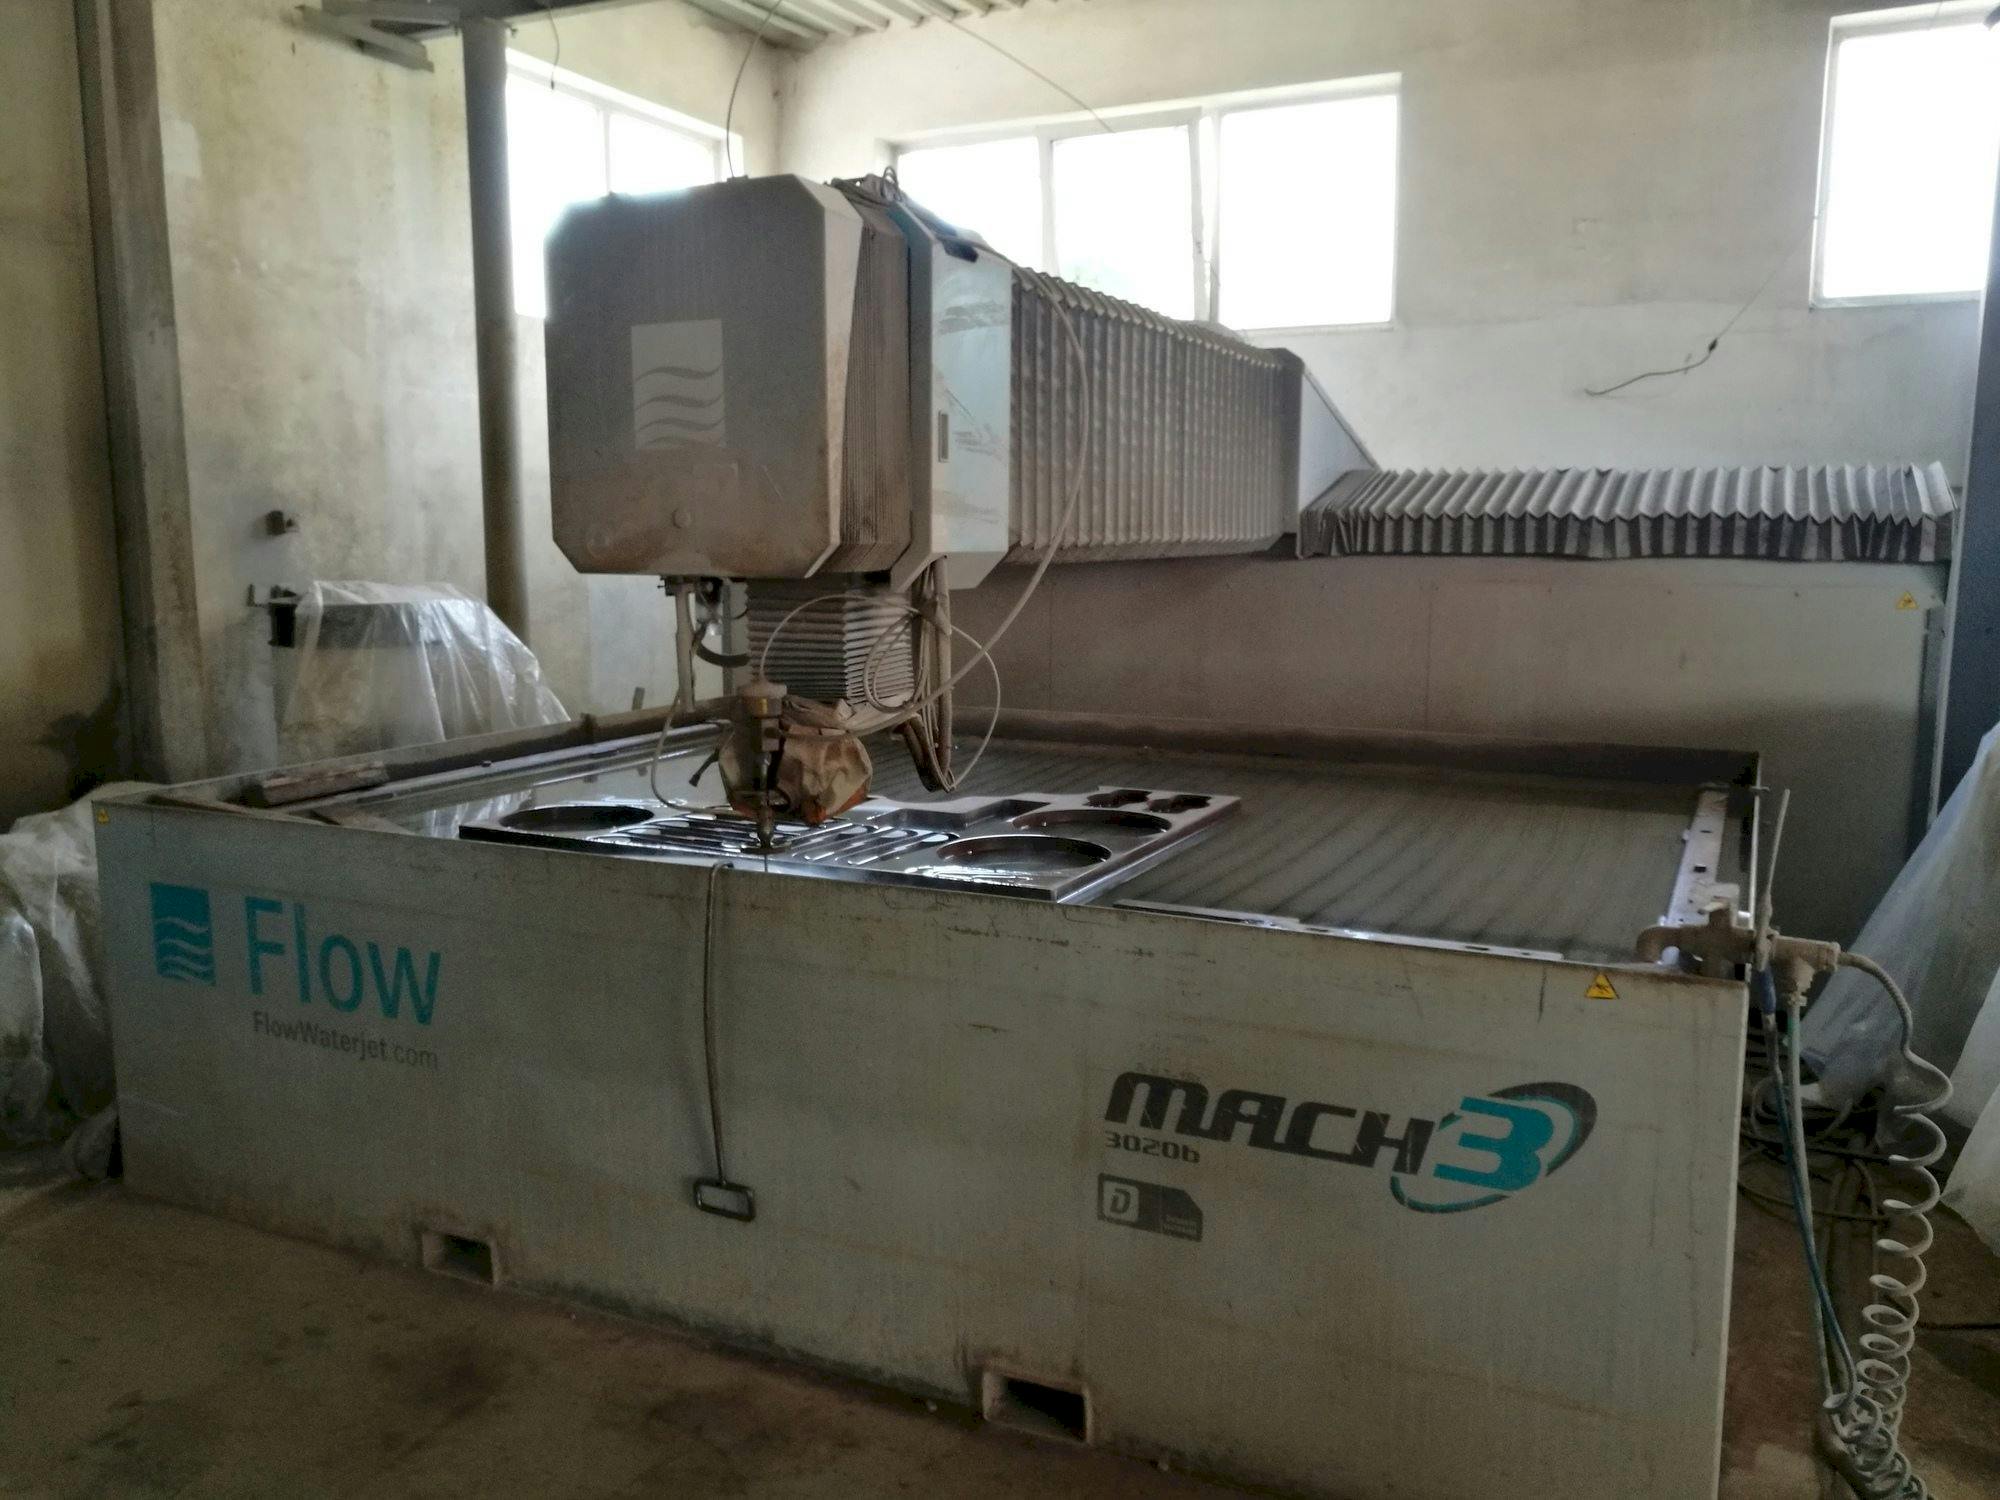 Widok z przodu maszyny Flow Mach3-3020b